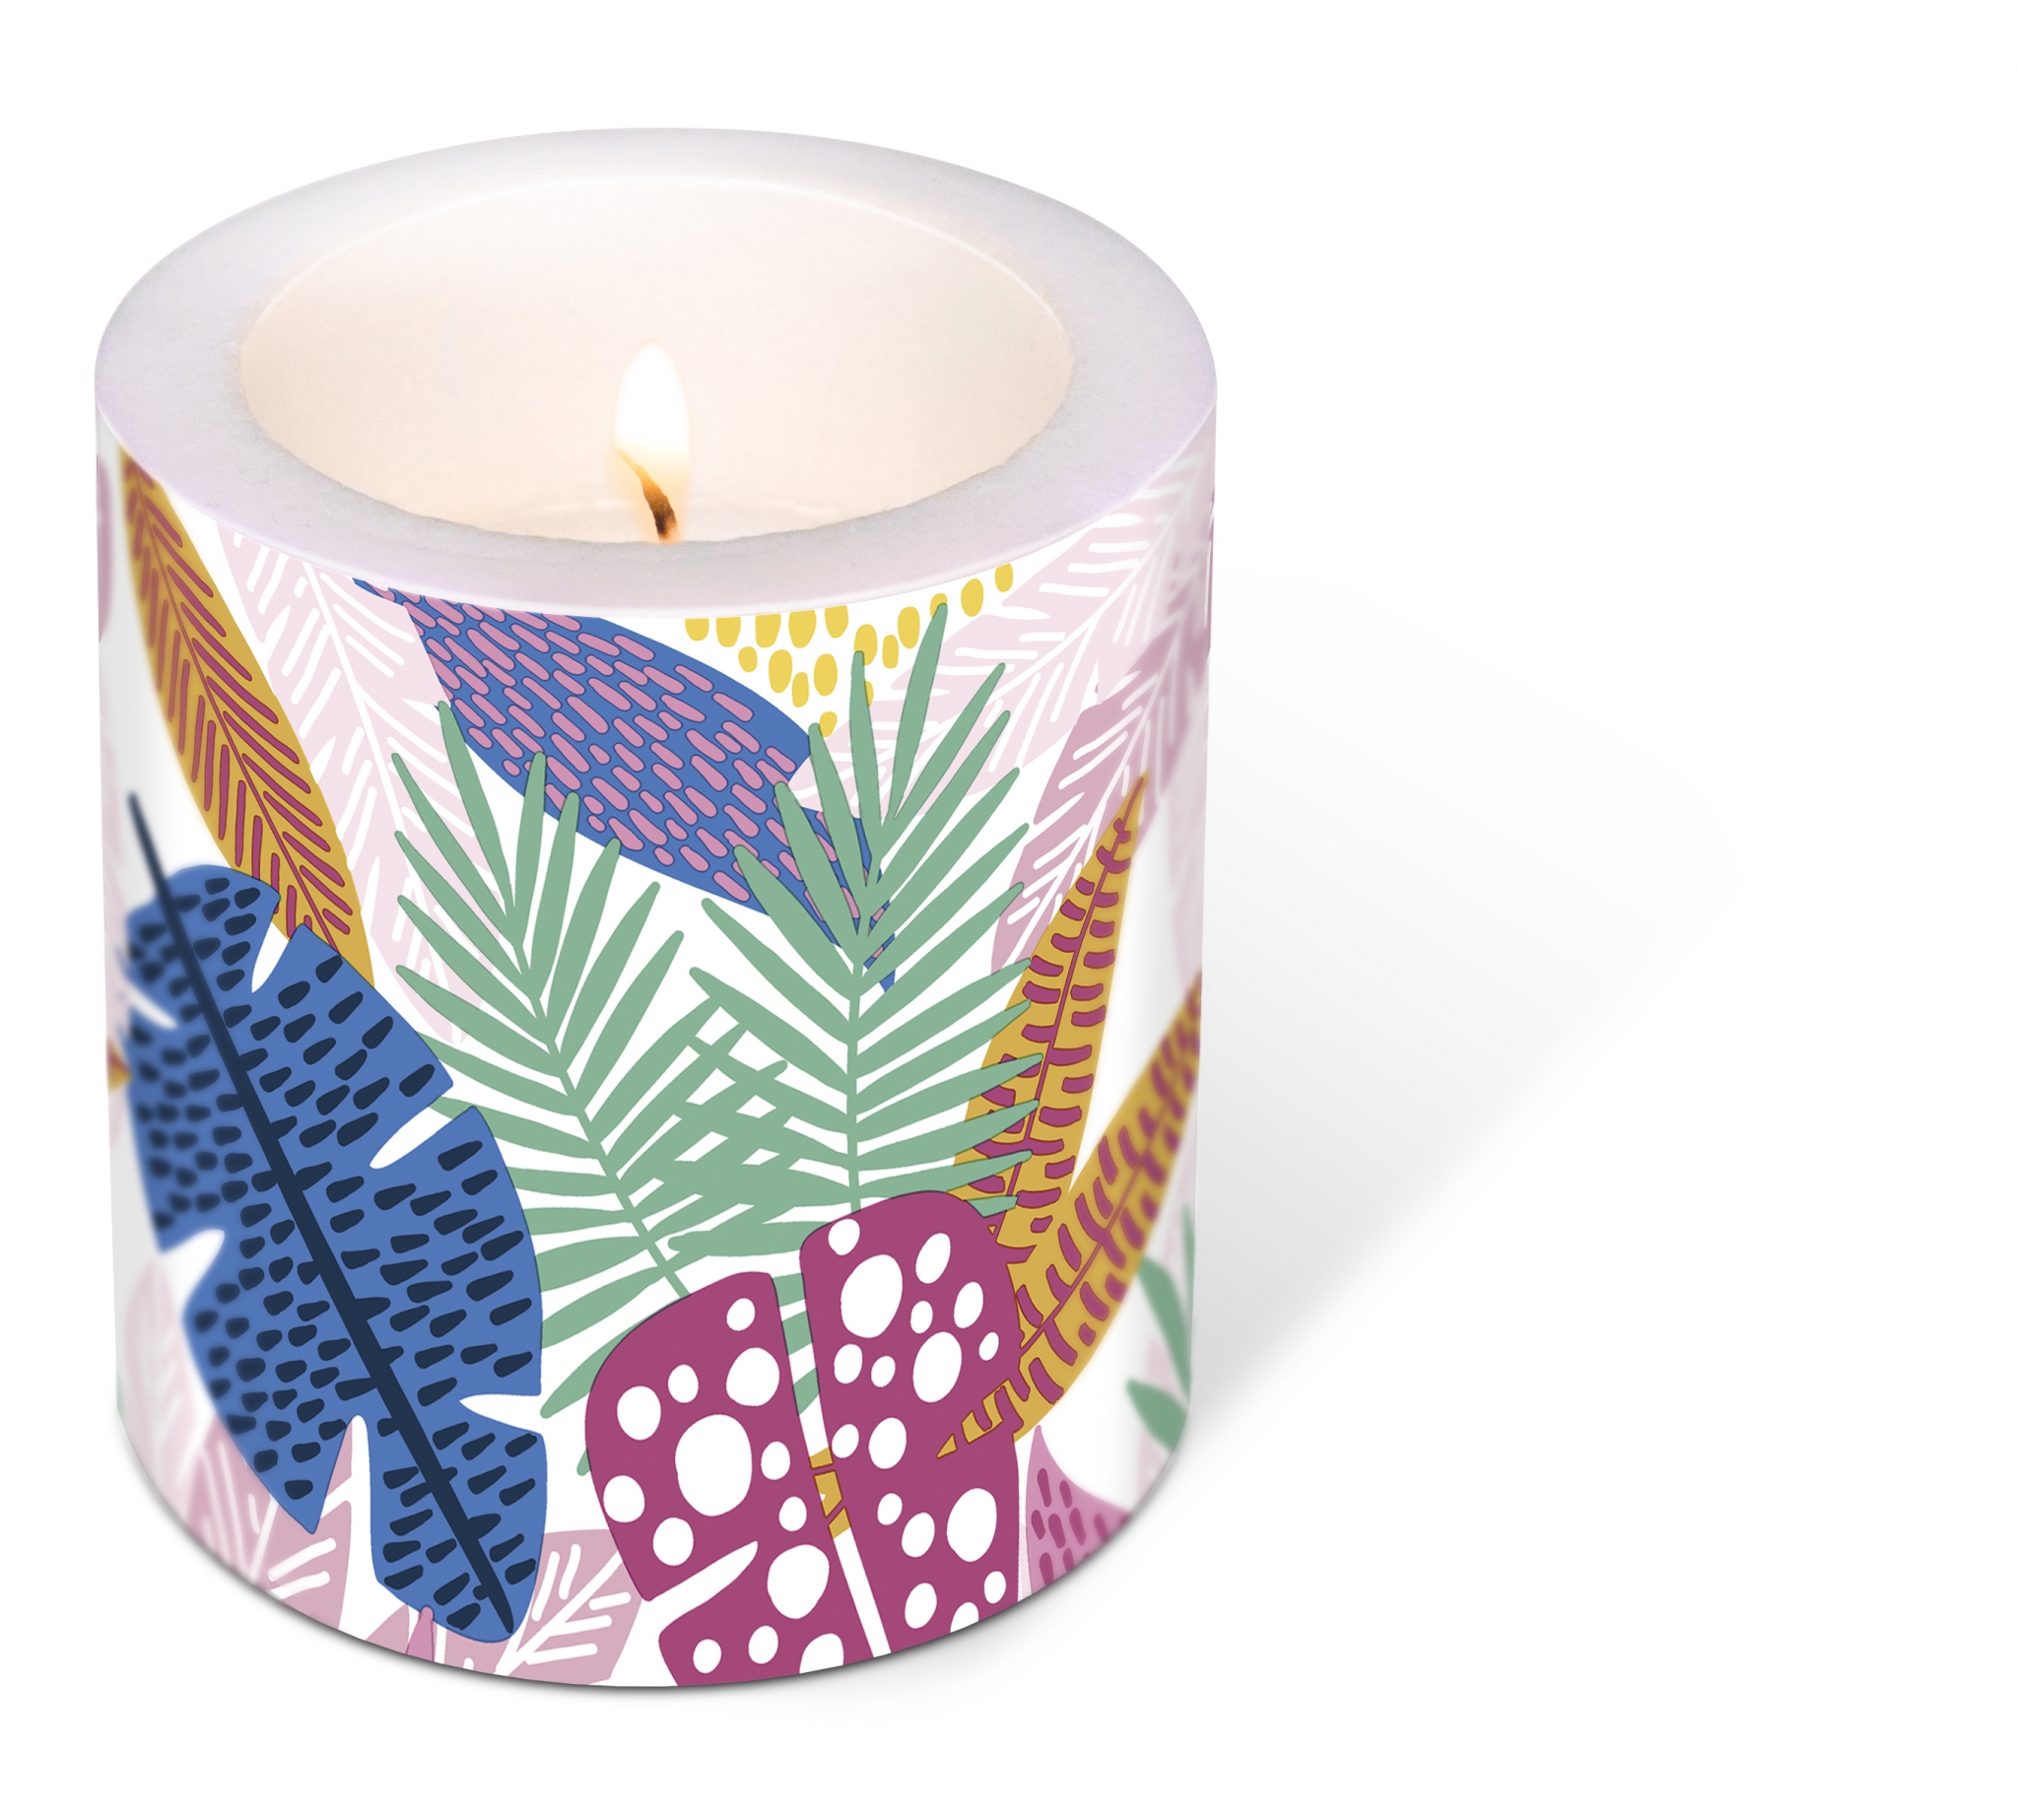 vela decorativa - Decorated Candle Wild leaves